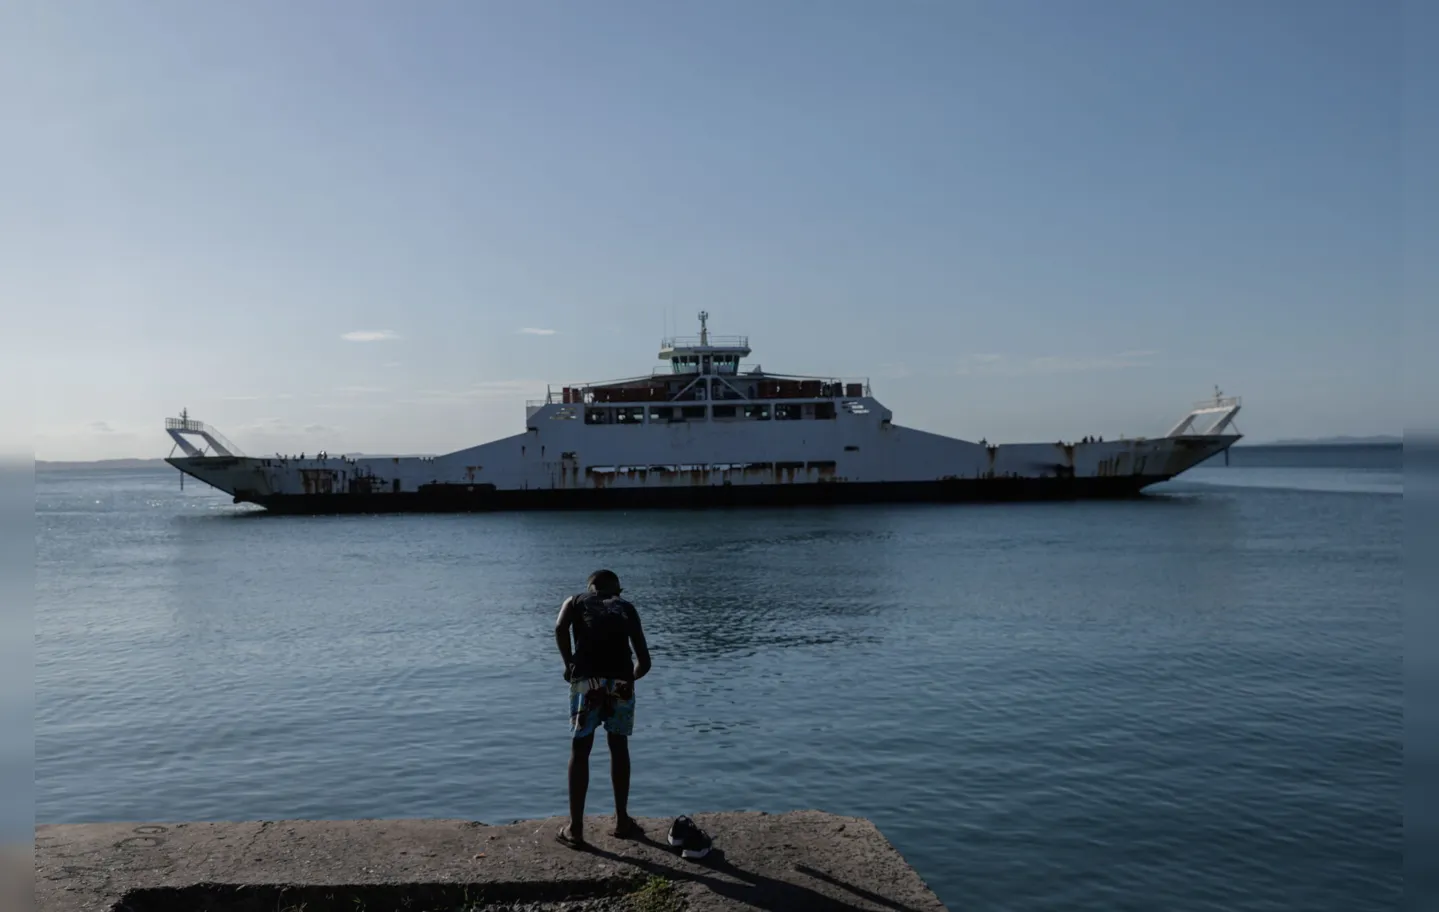 Ferry Zumbi dos Palmares atracando no terminal marítimo de São Joaquim